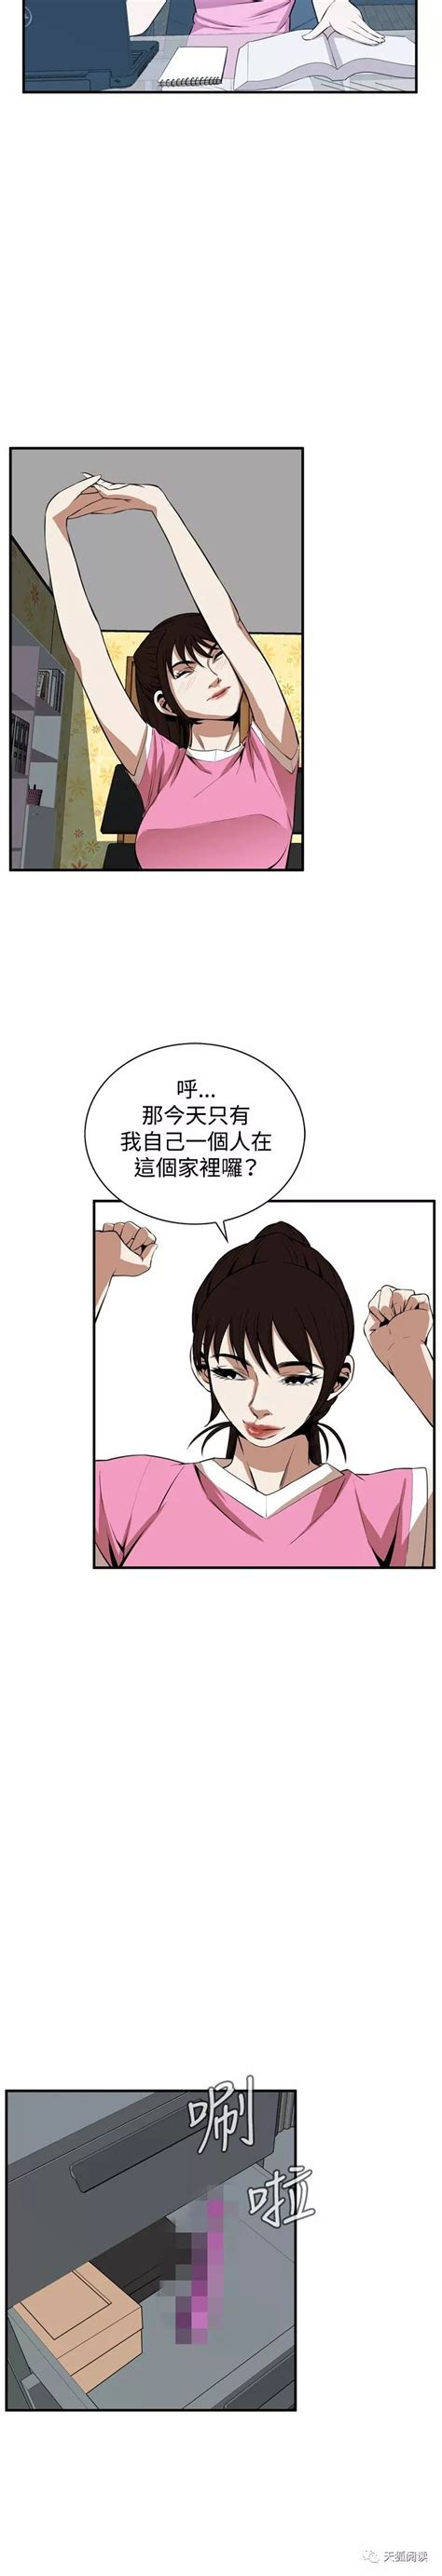 韩国漫画,恋爱漫画：窥视者2 第1到3话 -天狐阅读_经商宝